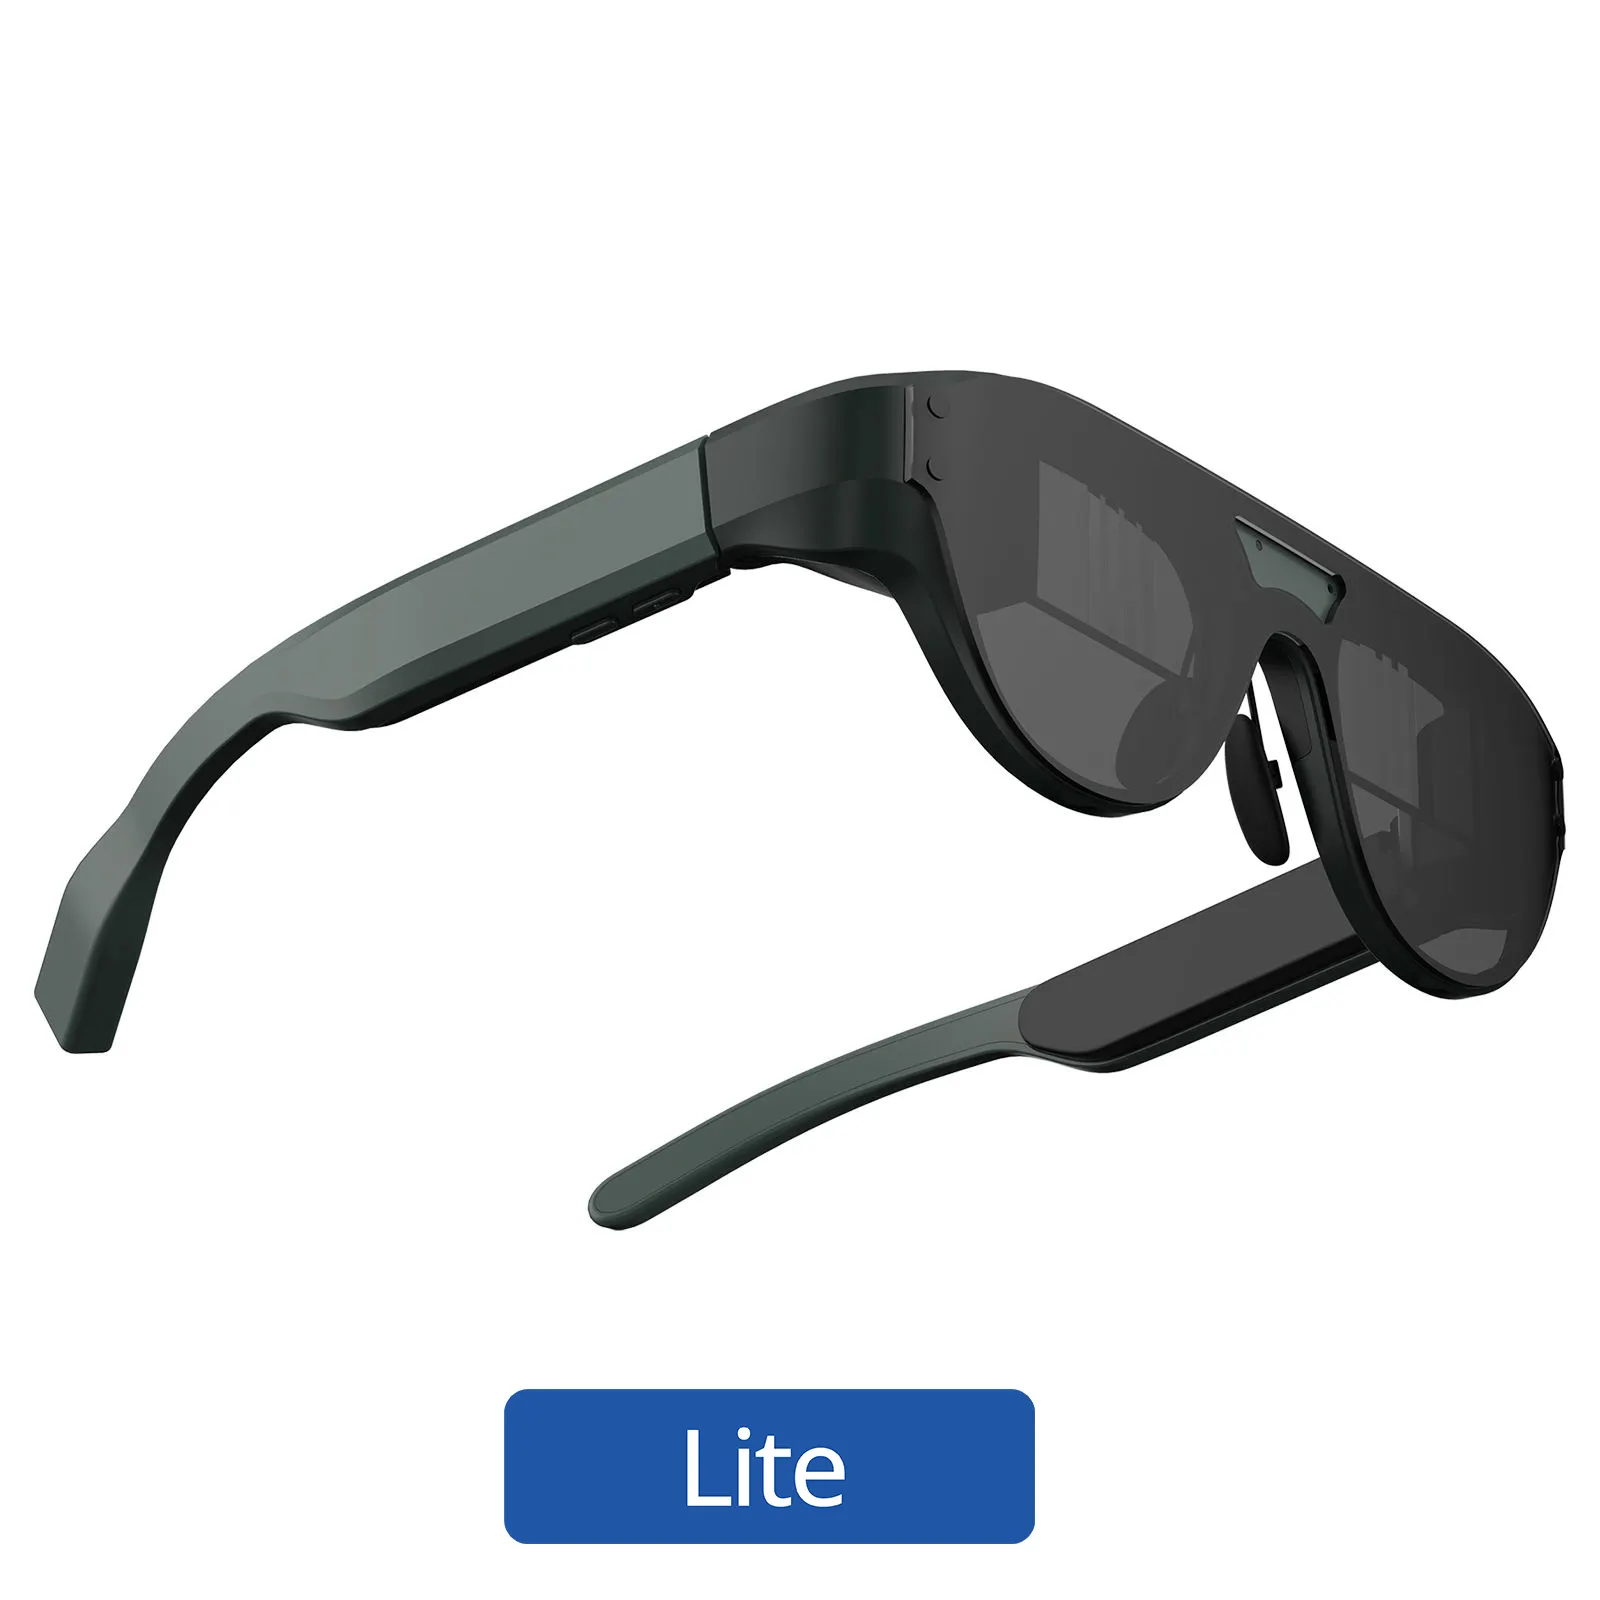 نظارات أريال Mengjiaoxu1998 Legion Hey Lite مع اختبار مجاني لمدة 60 يومًا، تدعم أدوات المساعدة على تقوية السمع بحد أدنى من فقدان السمع ولغات متعددة